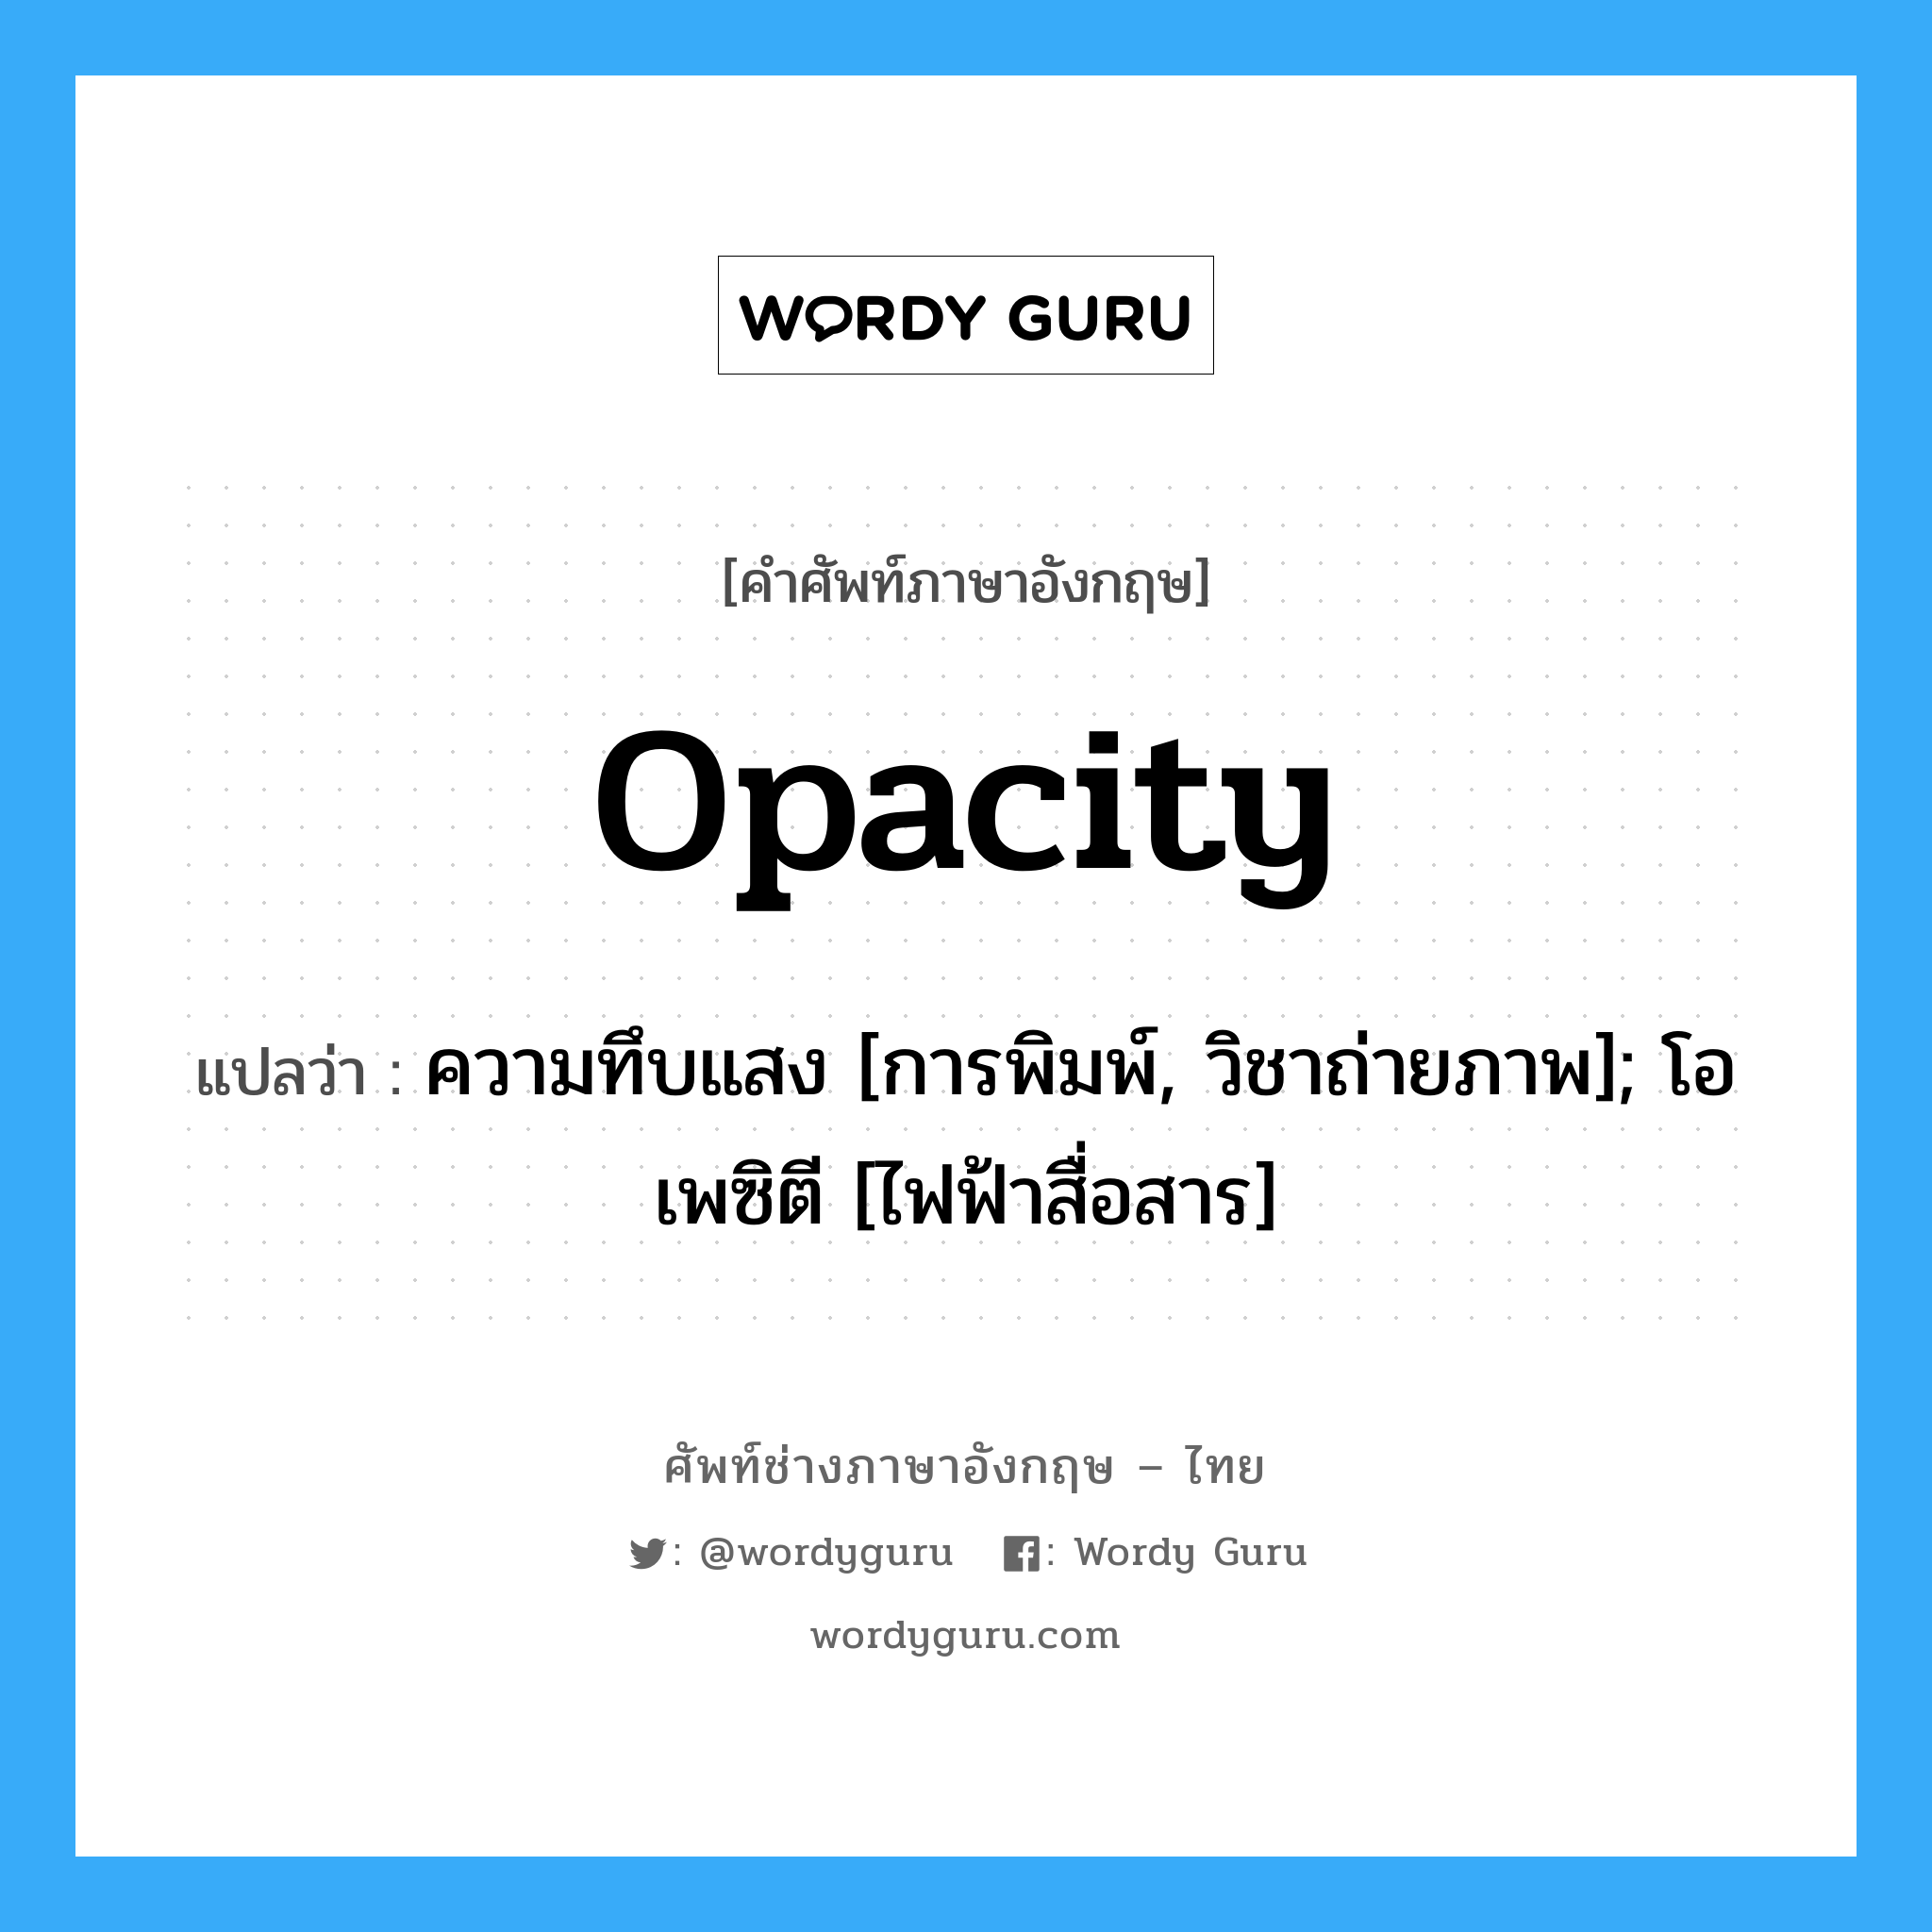 Opacity แปลว่า?, คำศัพท์ช่างภาษาอังกฤษ - ไทย Opacity คำศัพท์ภาษาอังกฤษ Opacity แปลว่า ความทึบแสง [การพิมพ์, วิชาถ่ายภาพ]; โอเพซิตี [ไฟฟ้าสื่อสาร]